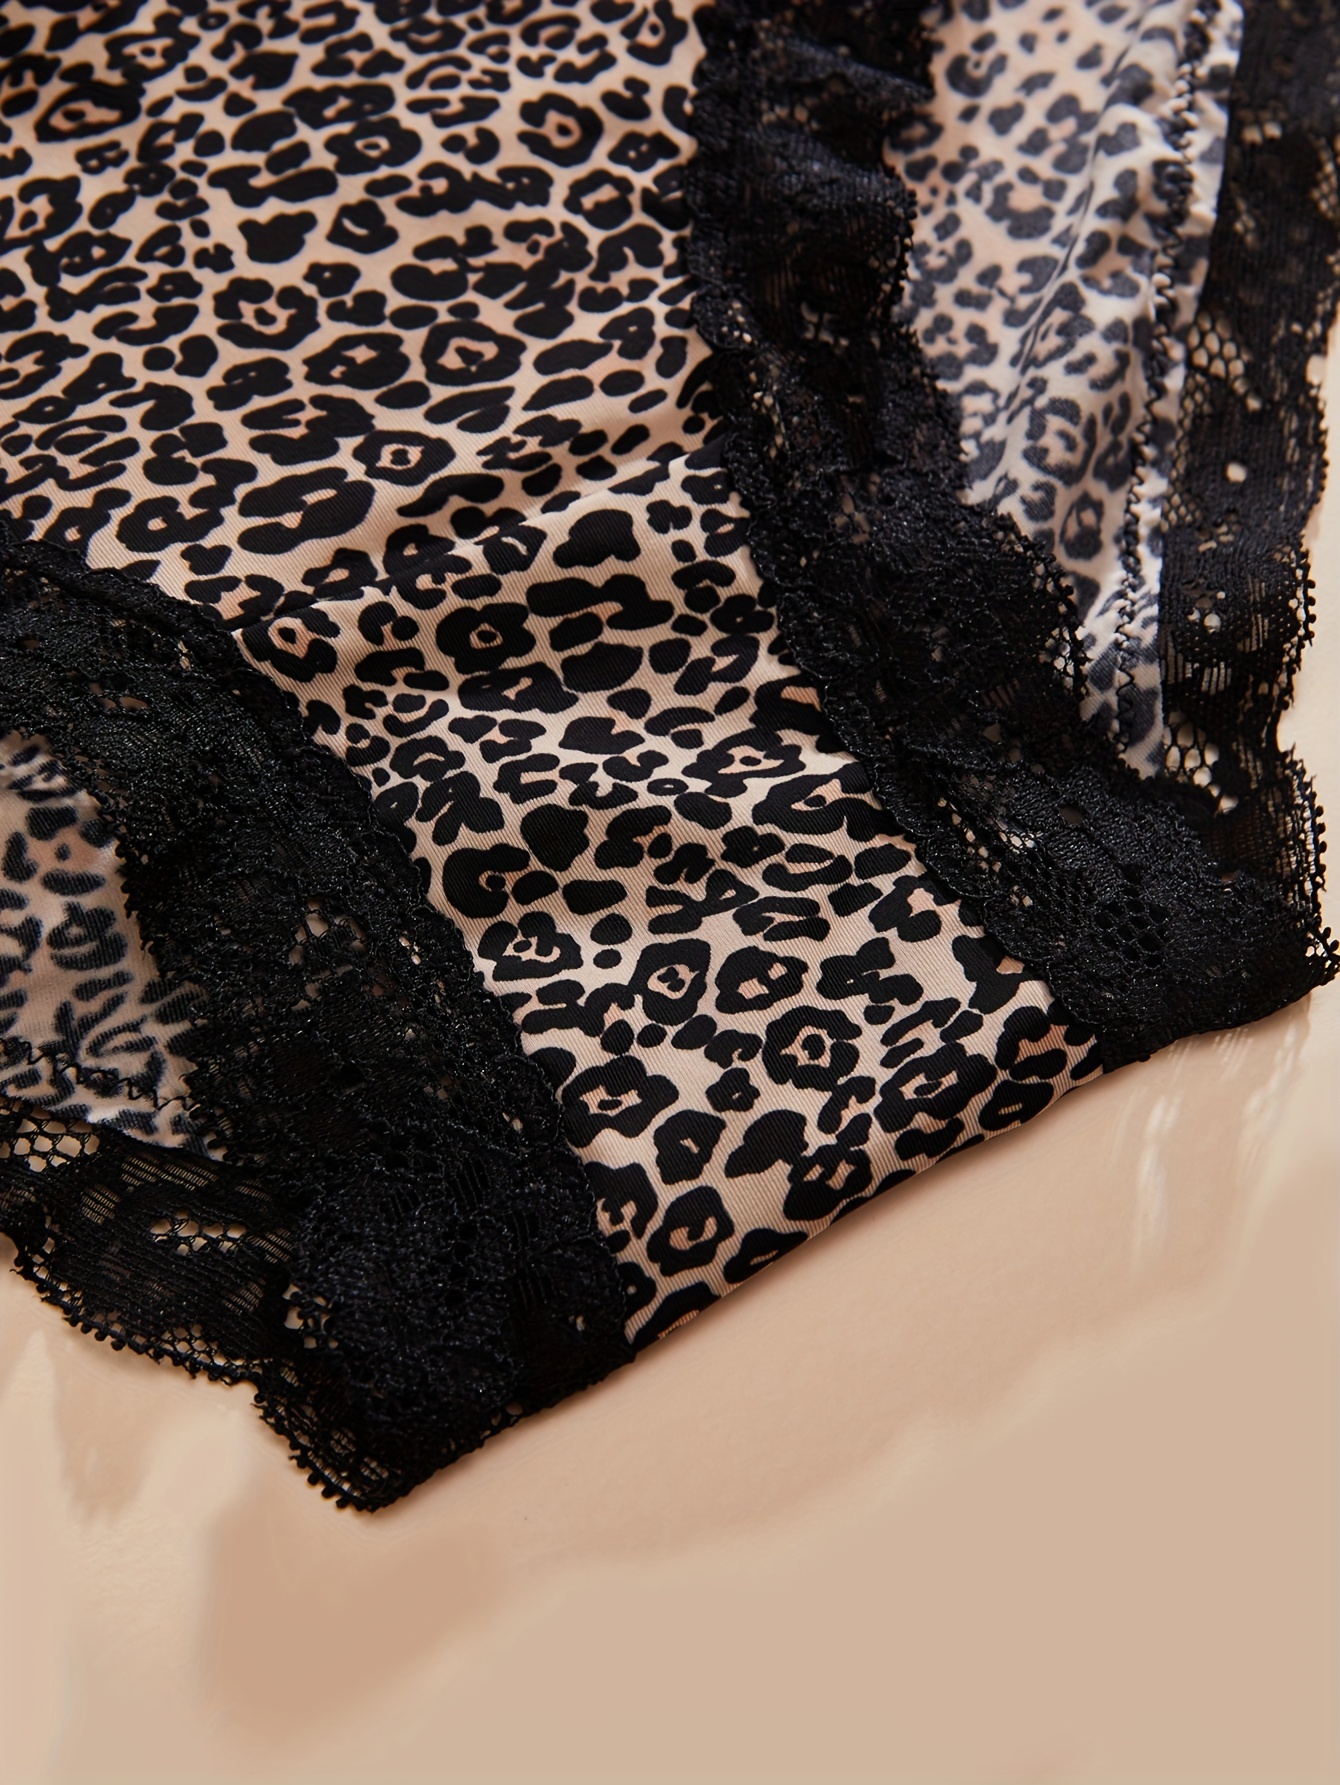 Leopard Cheetah print Blace Lace Panties Underwear Lingerie